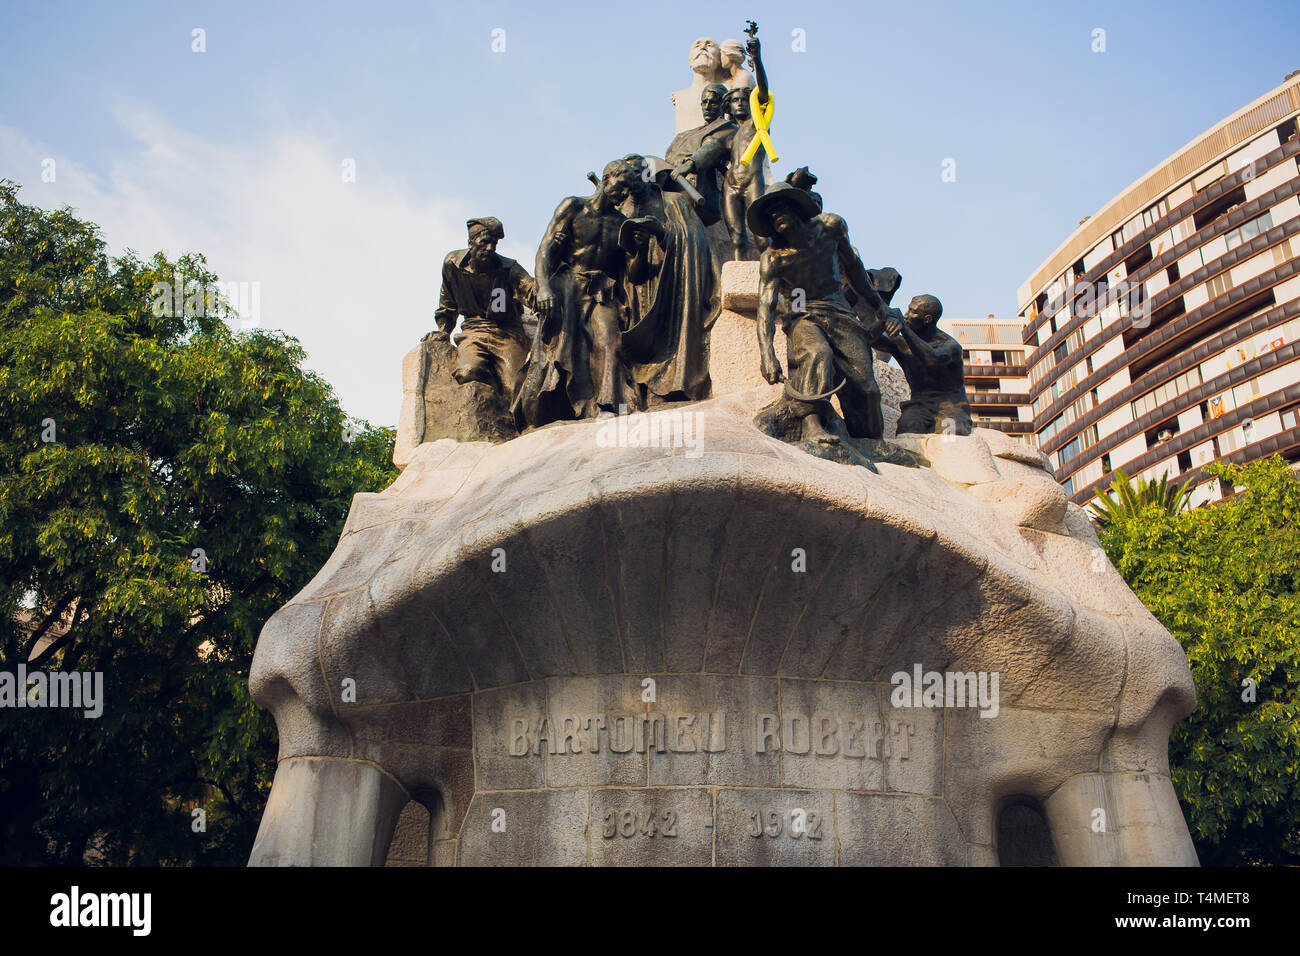 Barcellona, Spagna - 16 agosto: Piazza Tetuan il 16 agosto 2018 a Barcellona, Spagna. Memorial per Bartomeu Robert, costruito tra il 1904 e 1910 è un Foto Stock